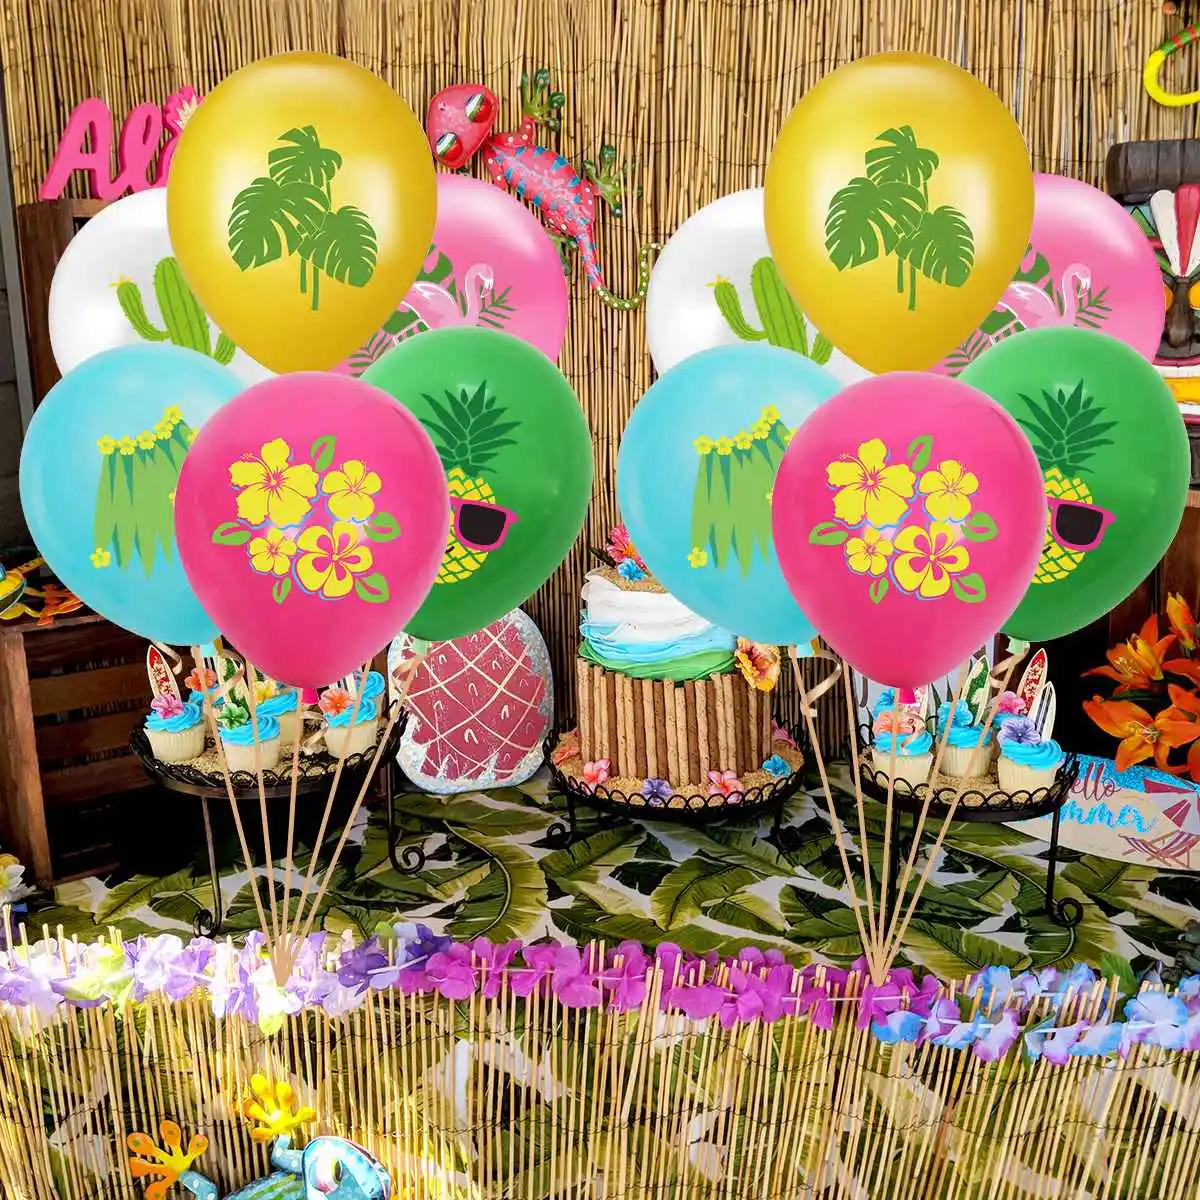 

Hawaii Happy Birthday Party Balloon Set Tropic Aloha Party Summer Pineapple Party Hawaiian Flamingo Birthday Party Baby Shower